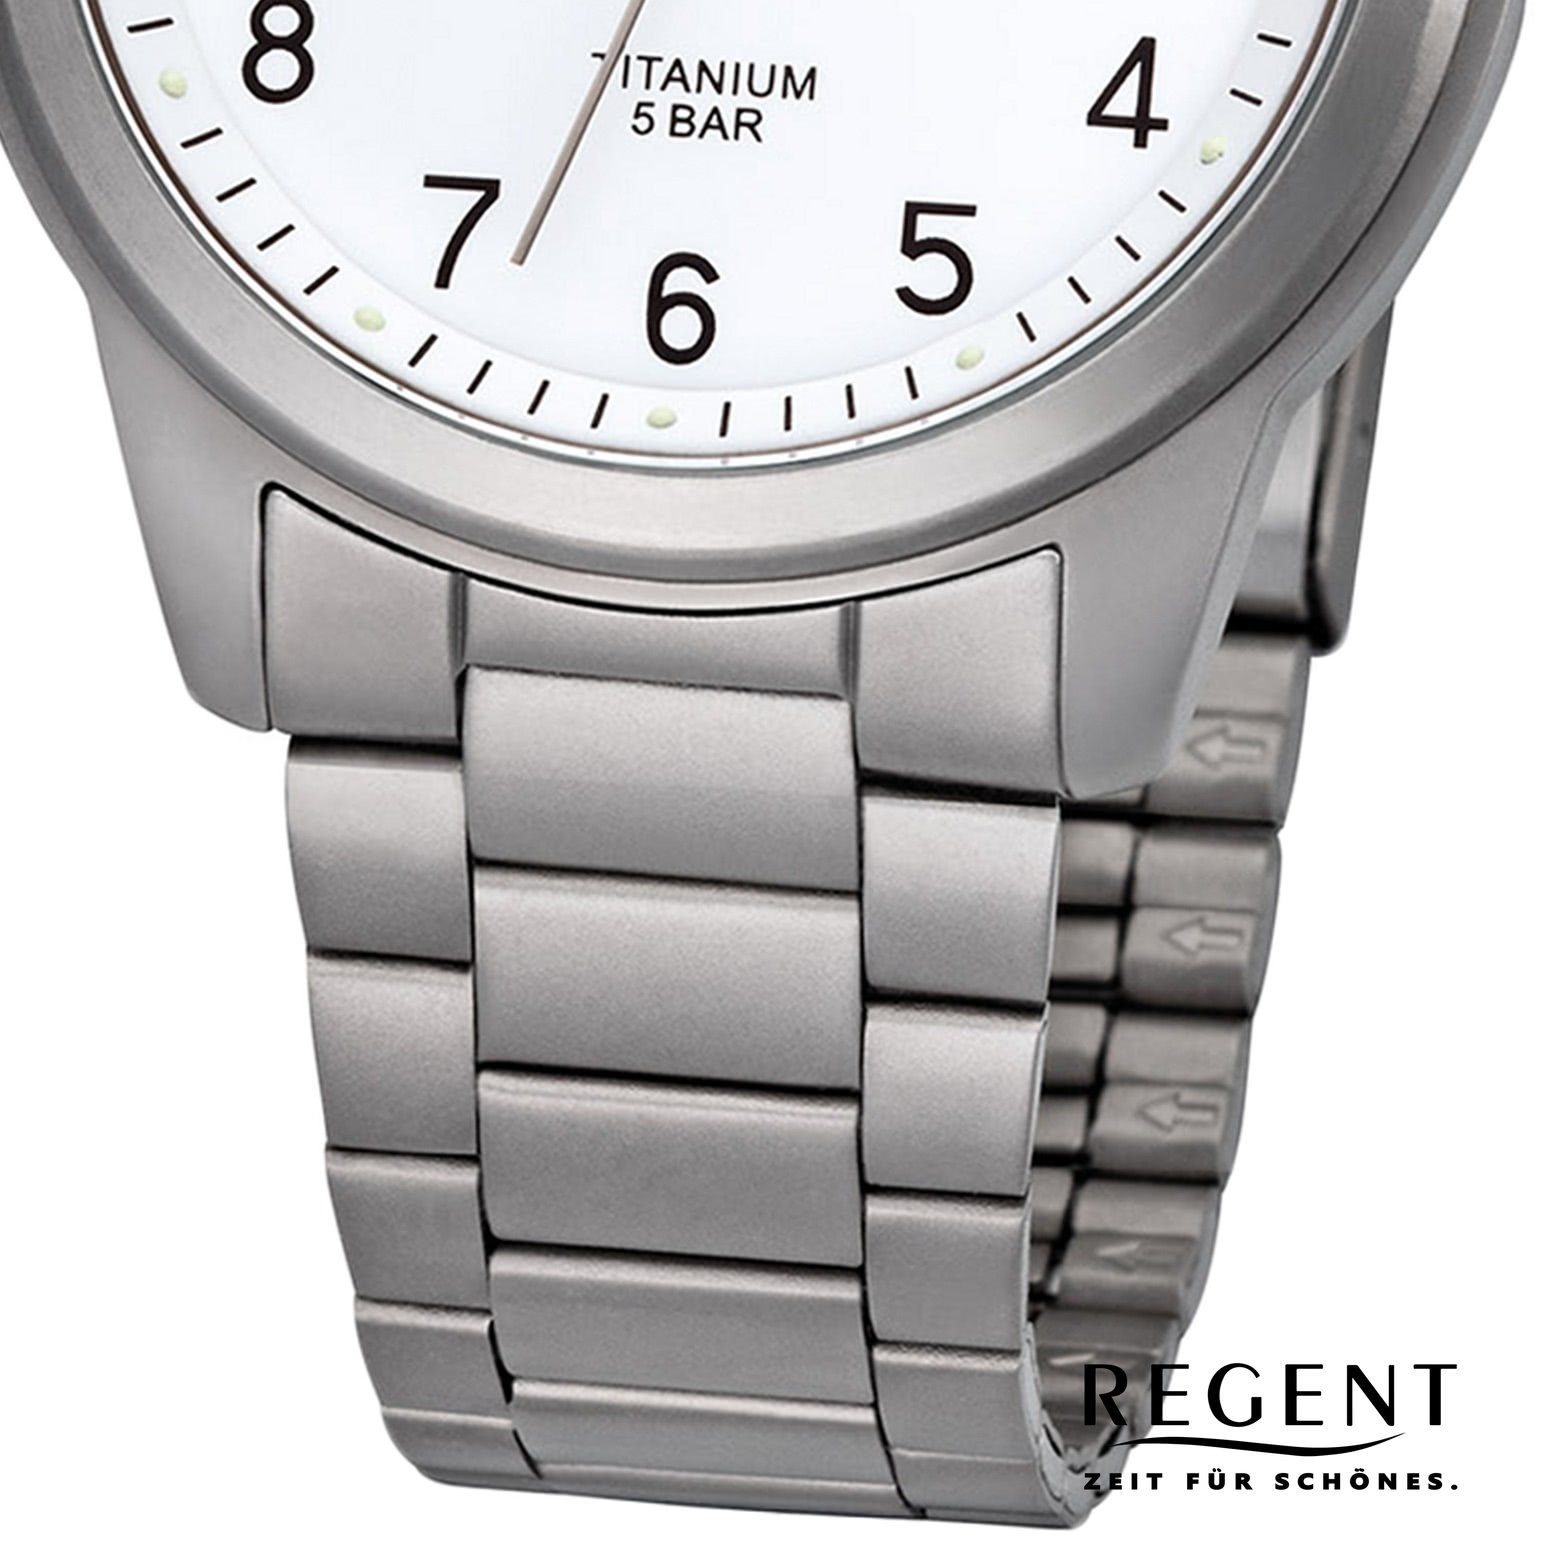 Uhr Quarzuhr Metall Quarzwerk, rund, Regent Metallarmband Armbanduhr F-208 Herren mittel Herren Regent (ca. 36mm),